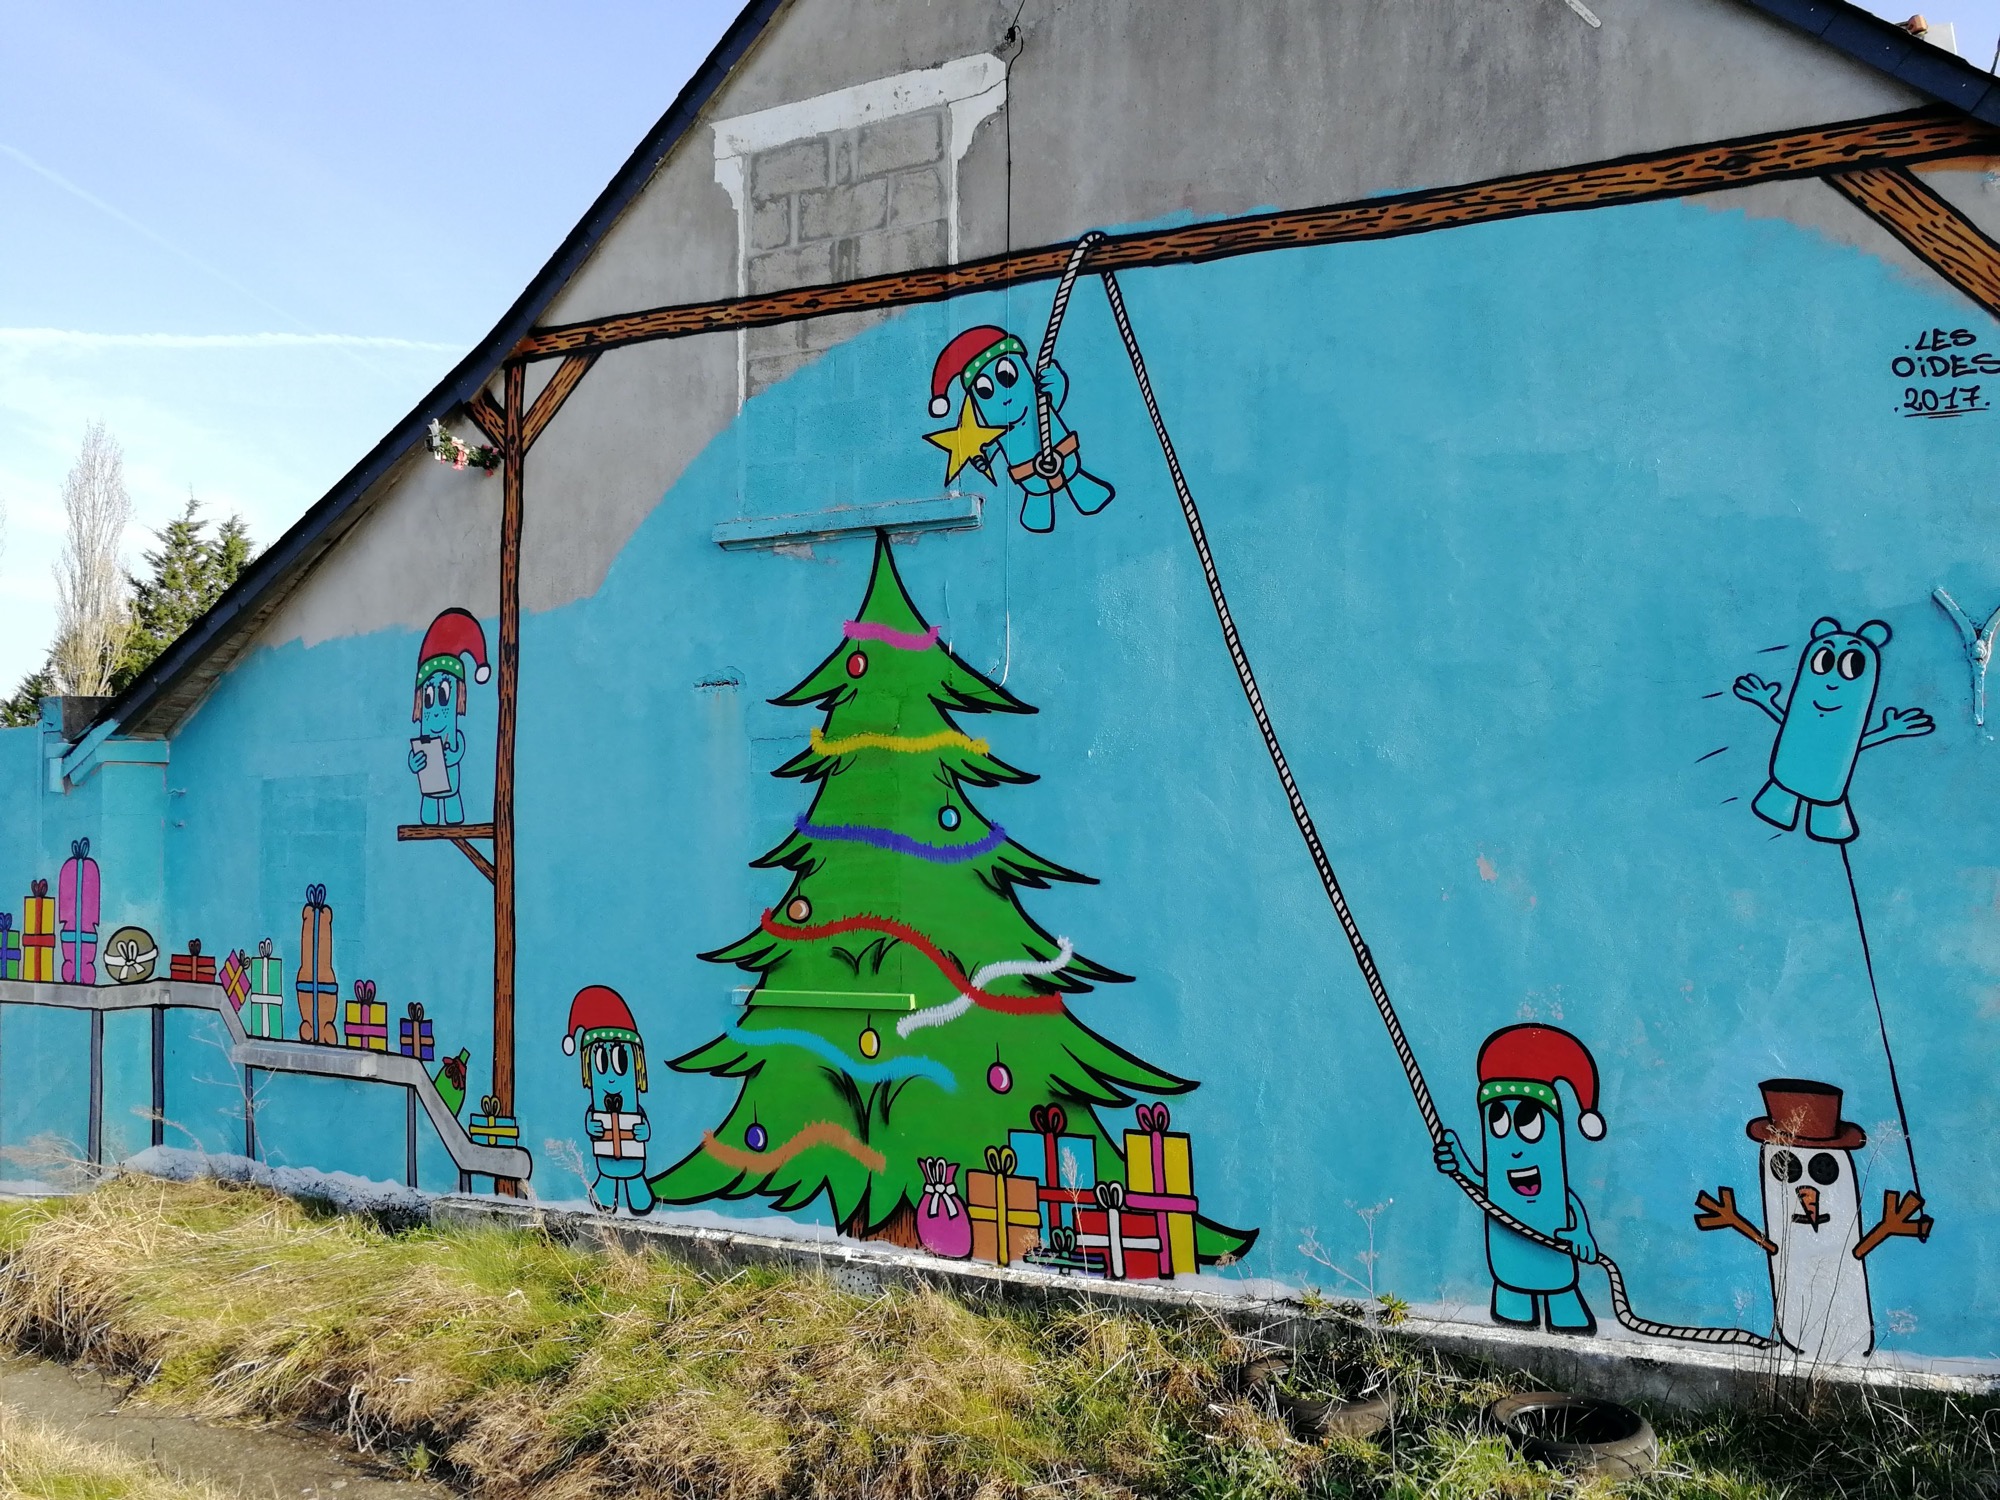 Graffiti 1304 Oides, sapin de Noël de Les Oides capturé par Rabot à Montoir-de-Bretagne France